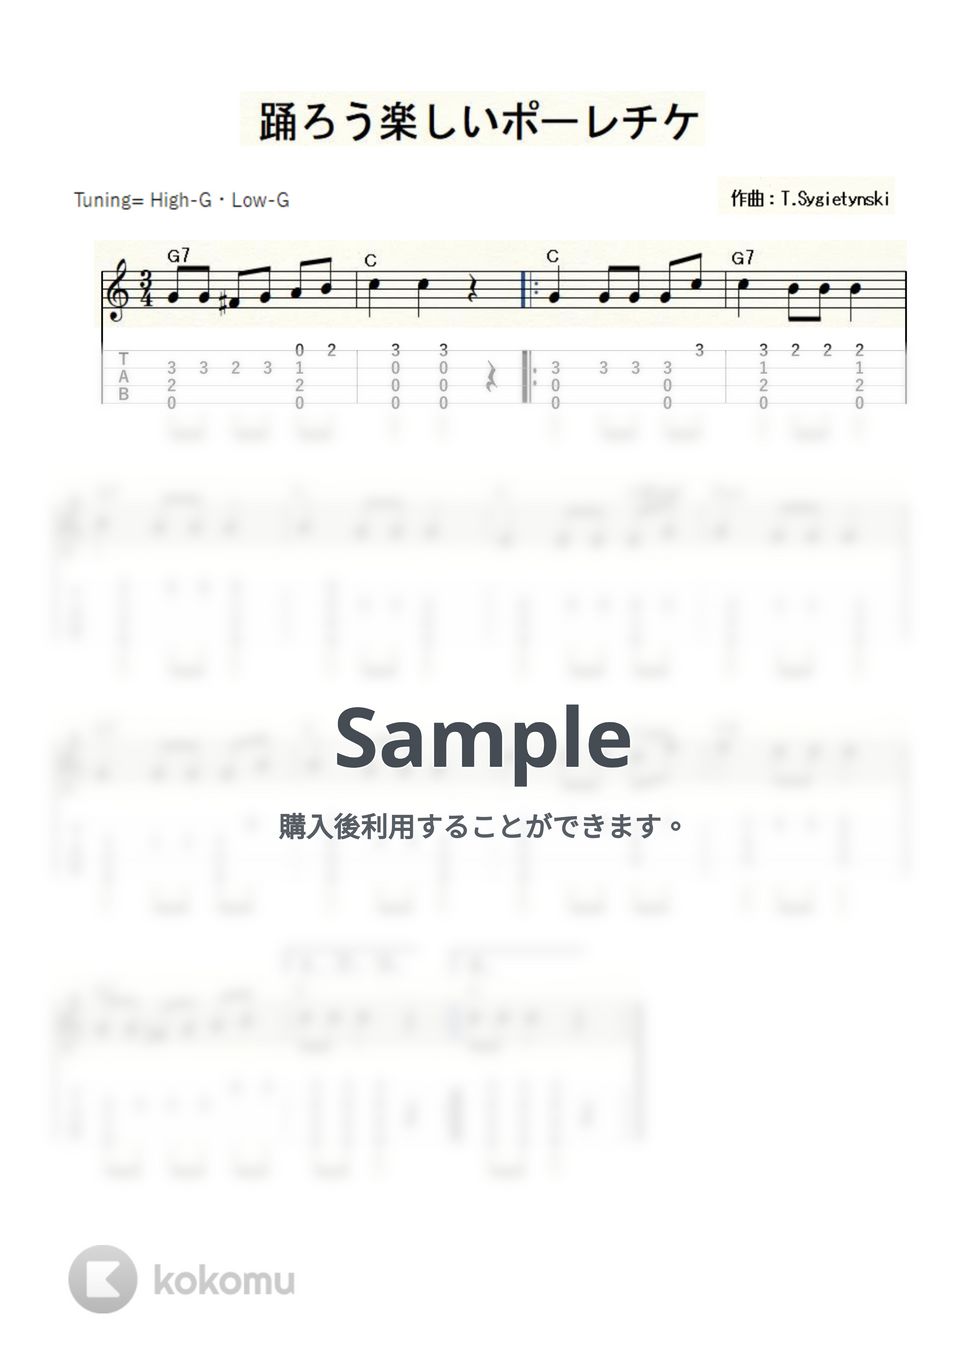 踊ろう楽しいポーレチケ (ｳｸﾚﾚｿﾛ/High-G・Low-G/初級～中級) by ukulelepapa